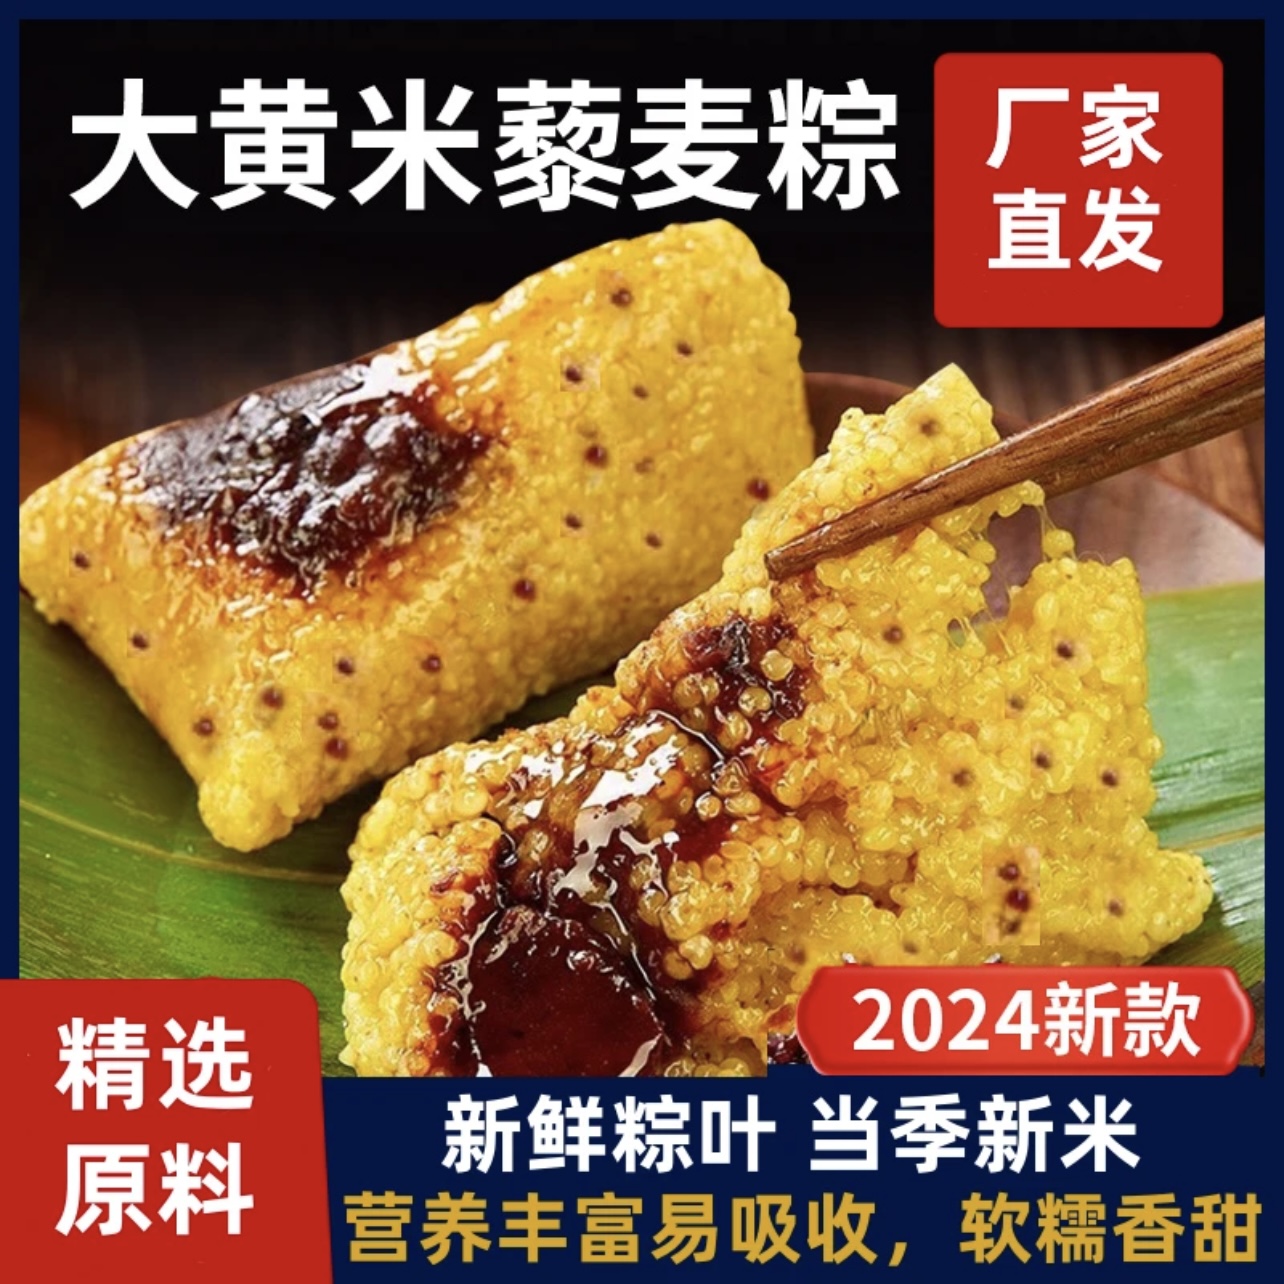 【大黄米藜麦粽子】燕麦藜麦豆沙粽子传统端午美食 2